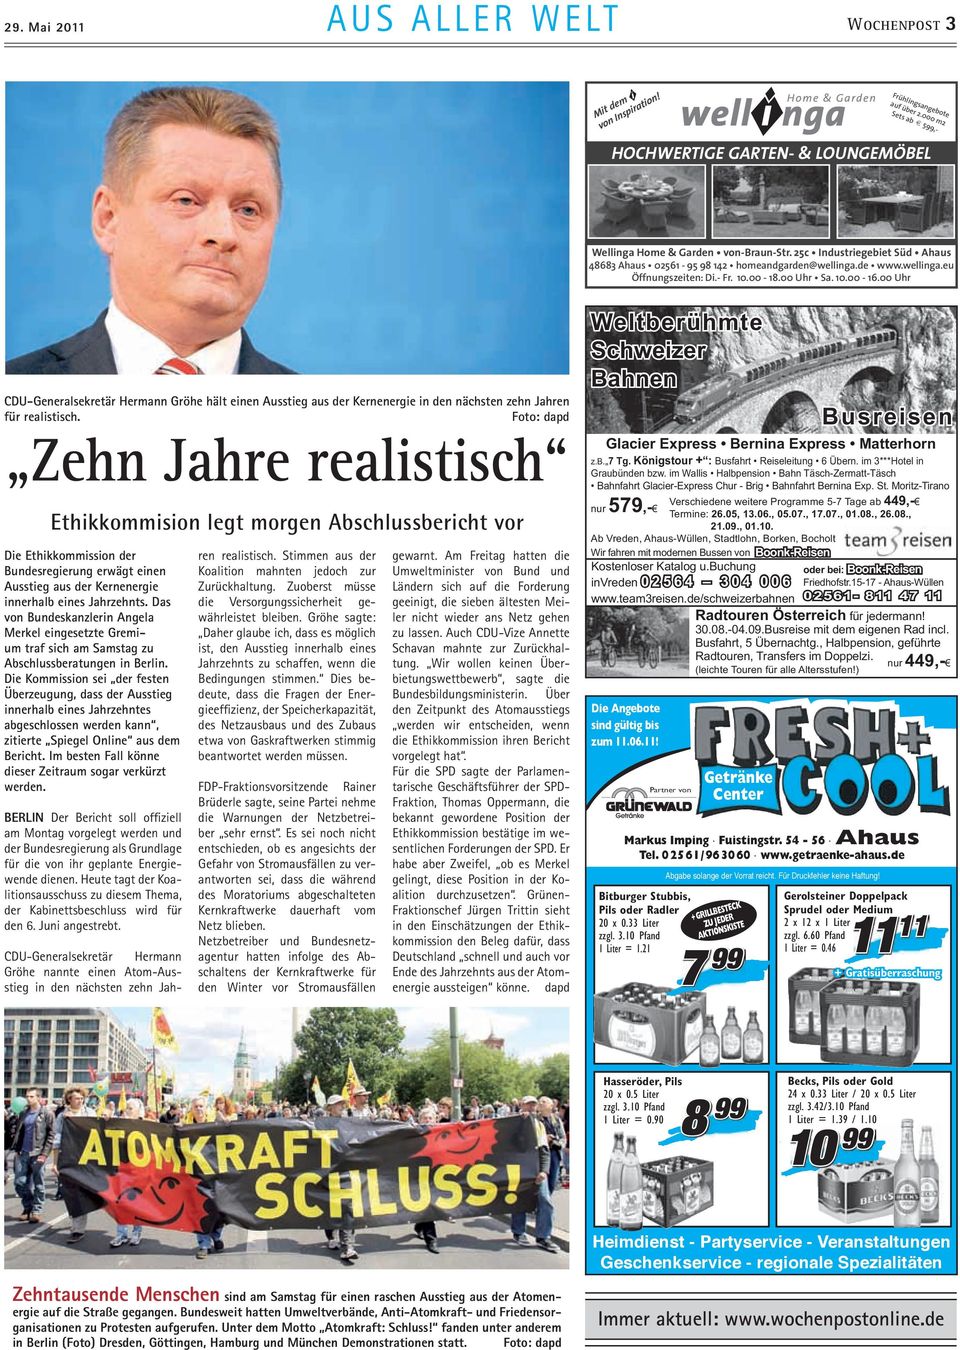 Das von Bundeskanzlerin Angela Merkel eingesetzte Gremium traf sich am Samstag zu Abschlussberatungen in Berlin.